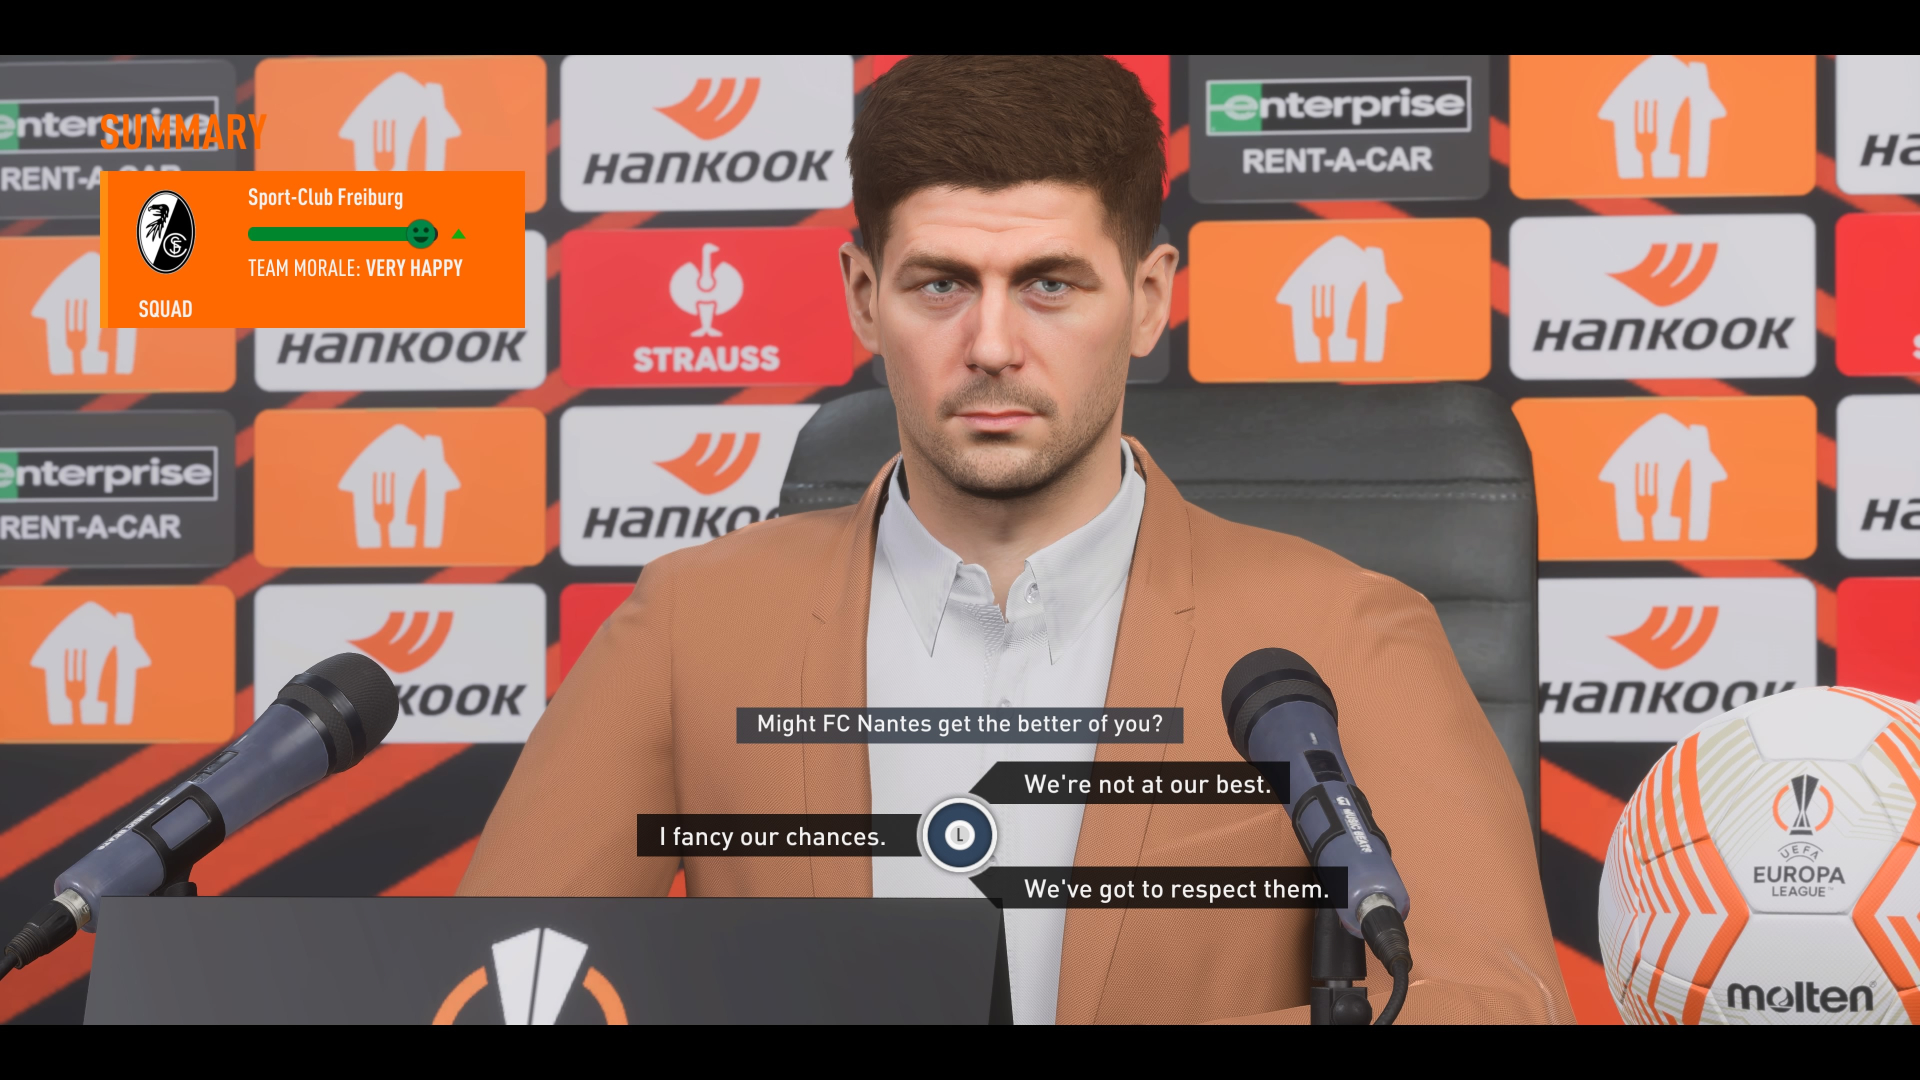 FIFA 23  Transfer - EA SPORTS